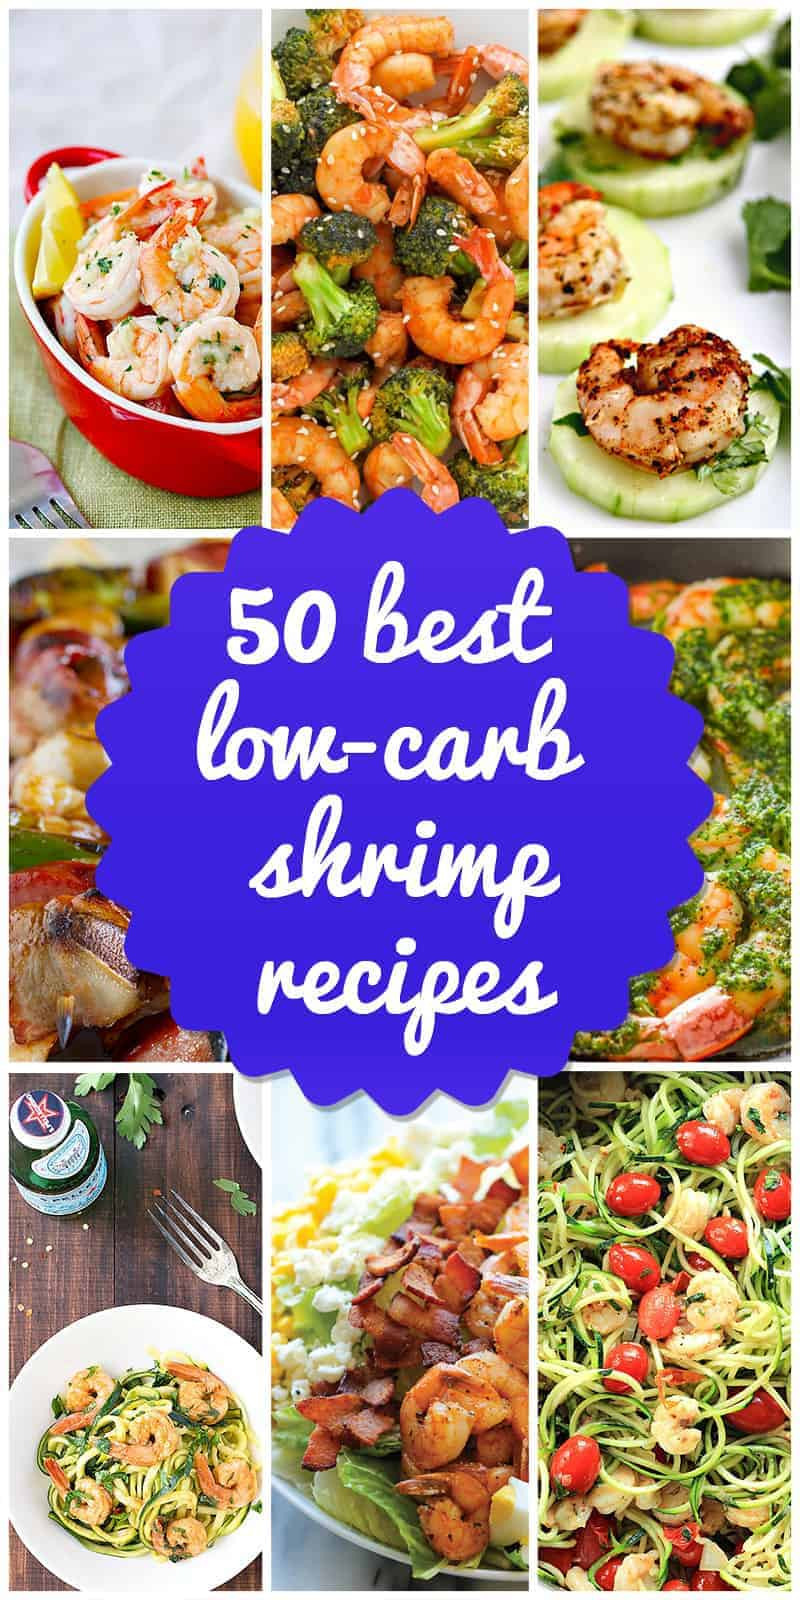 Low Carb Shrimp Recipes
 50 Best Low Carb Shrimp Recipes for 2018